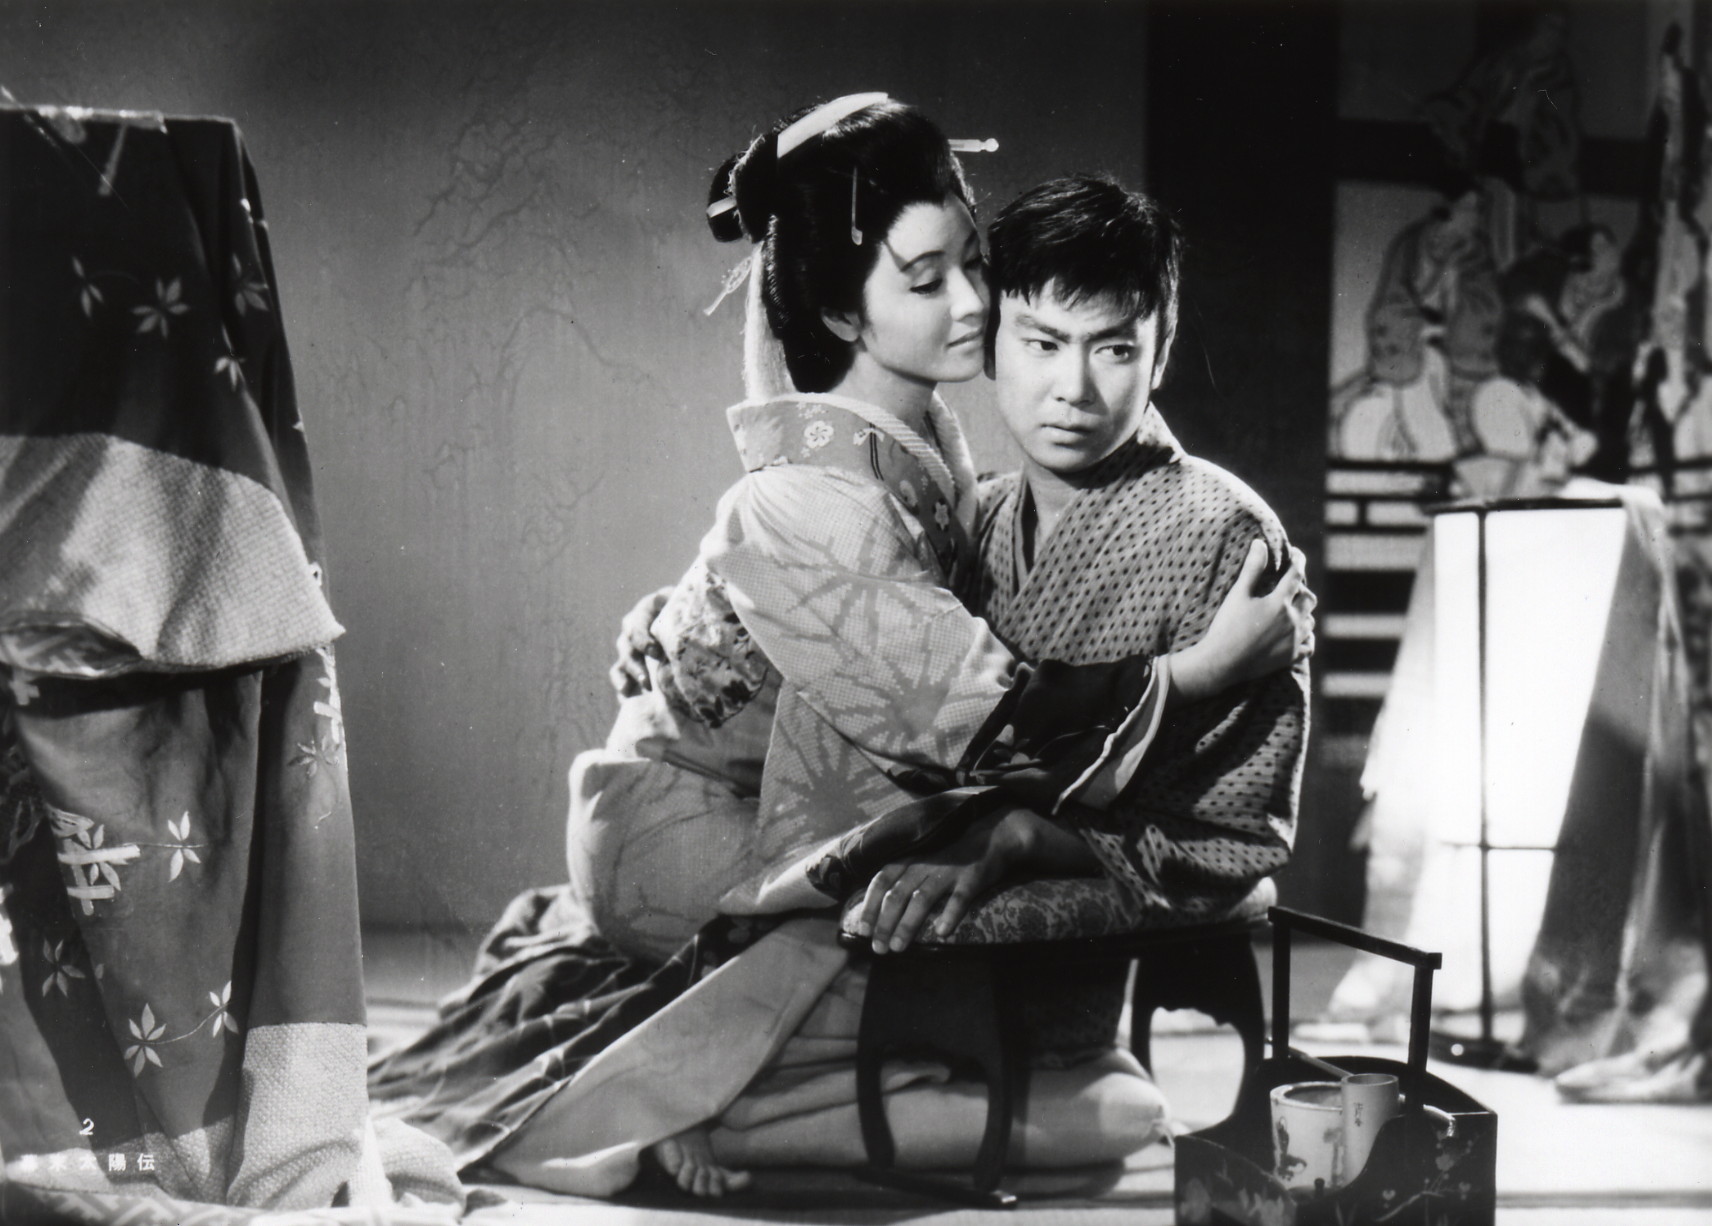 Япония истории любви. Солнце в последние дни сёгуната. Кинематограф Японии 20 века. Фрэнки Сакаи.